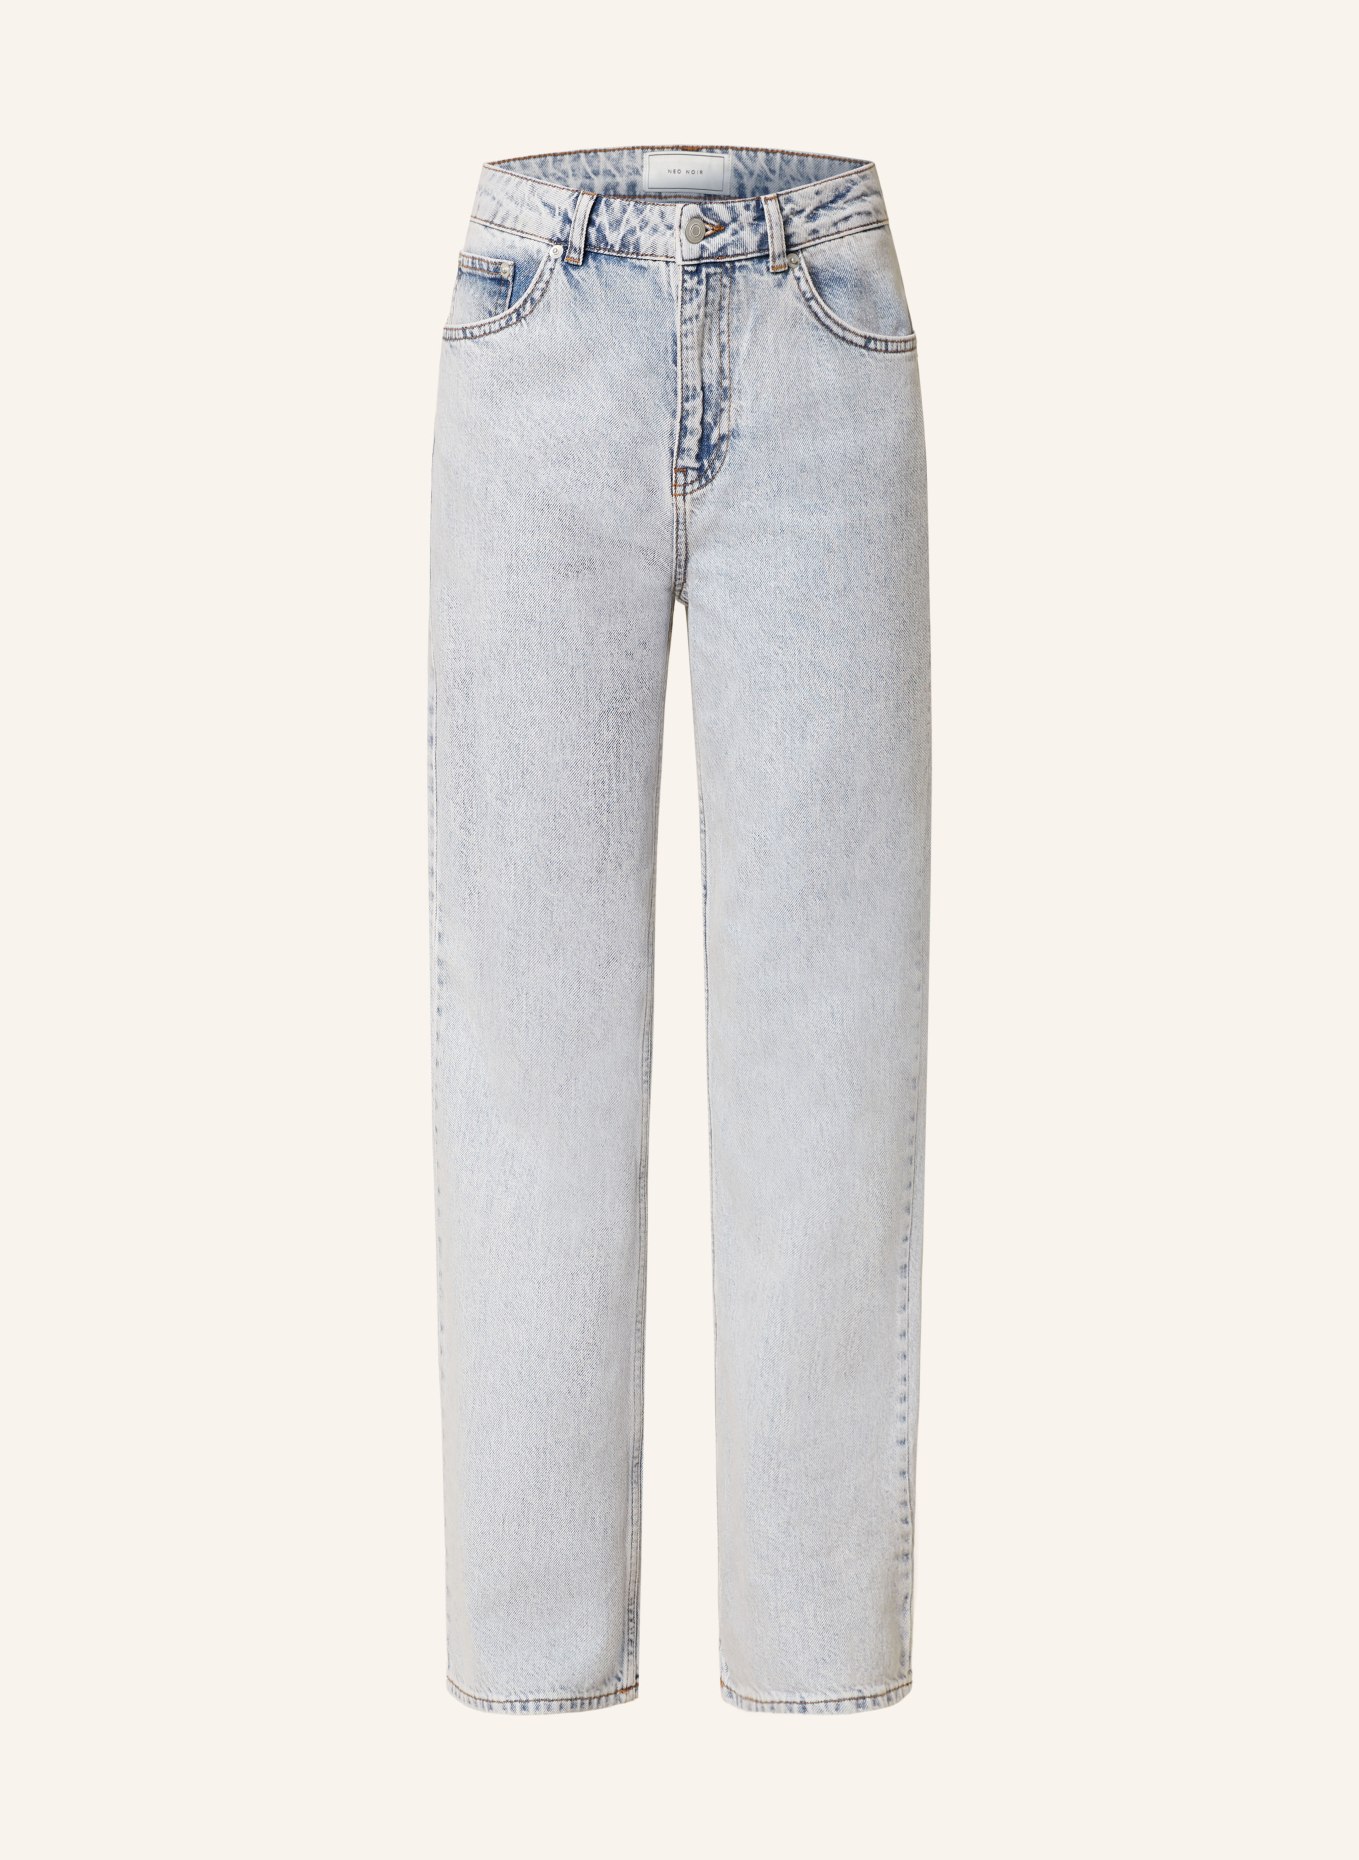 NEO NOIR Jeans SIMONA, Farbe: 407 Smoke Blue (Bild 1)